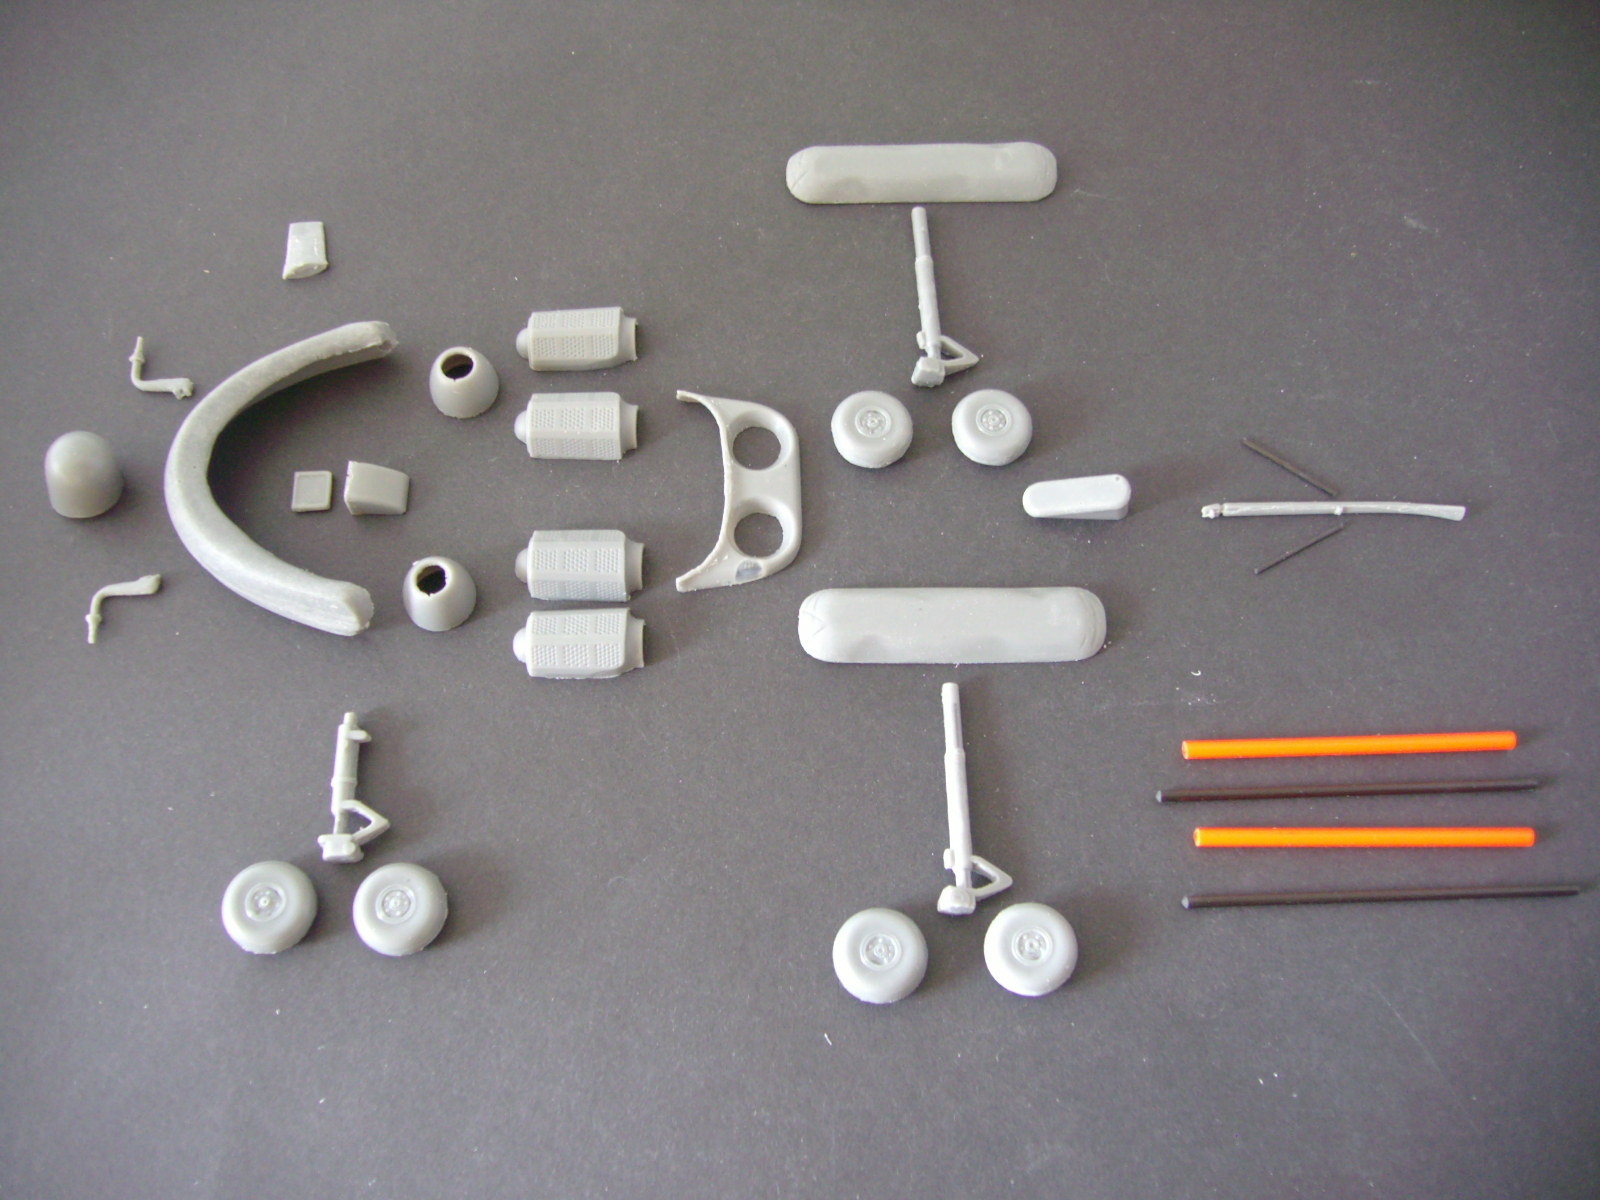 Bild 03: einige Ergänzungsteile, ähnlich aufgebaut wie bei einem Plast-Modellbau-Kasten.